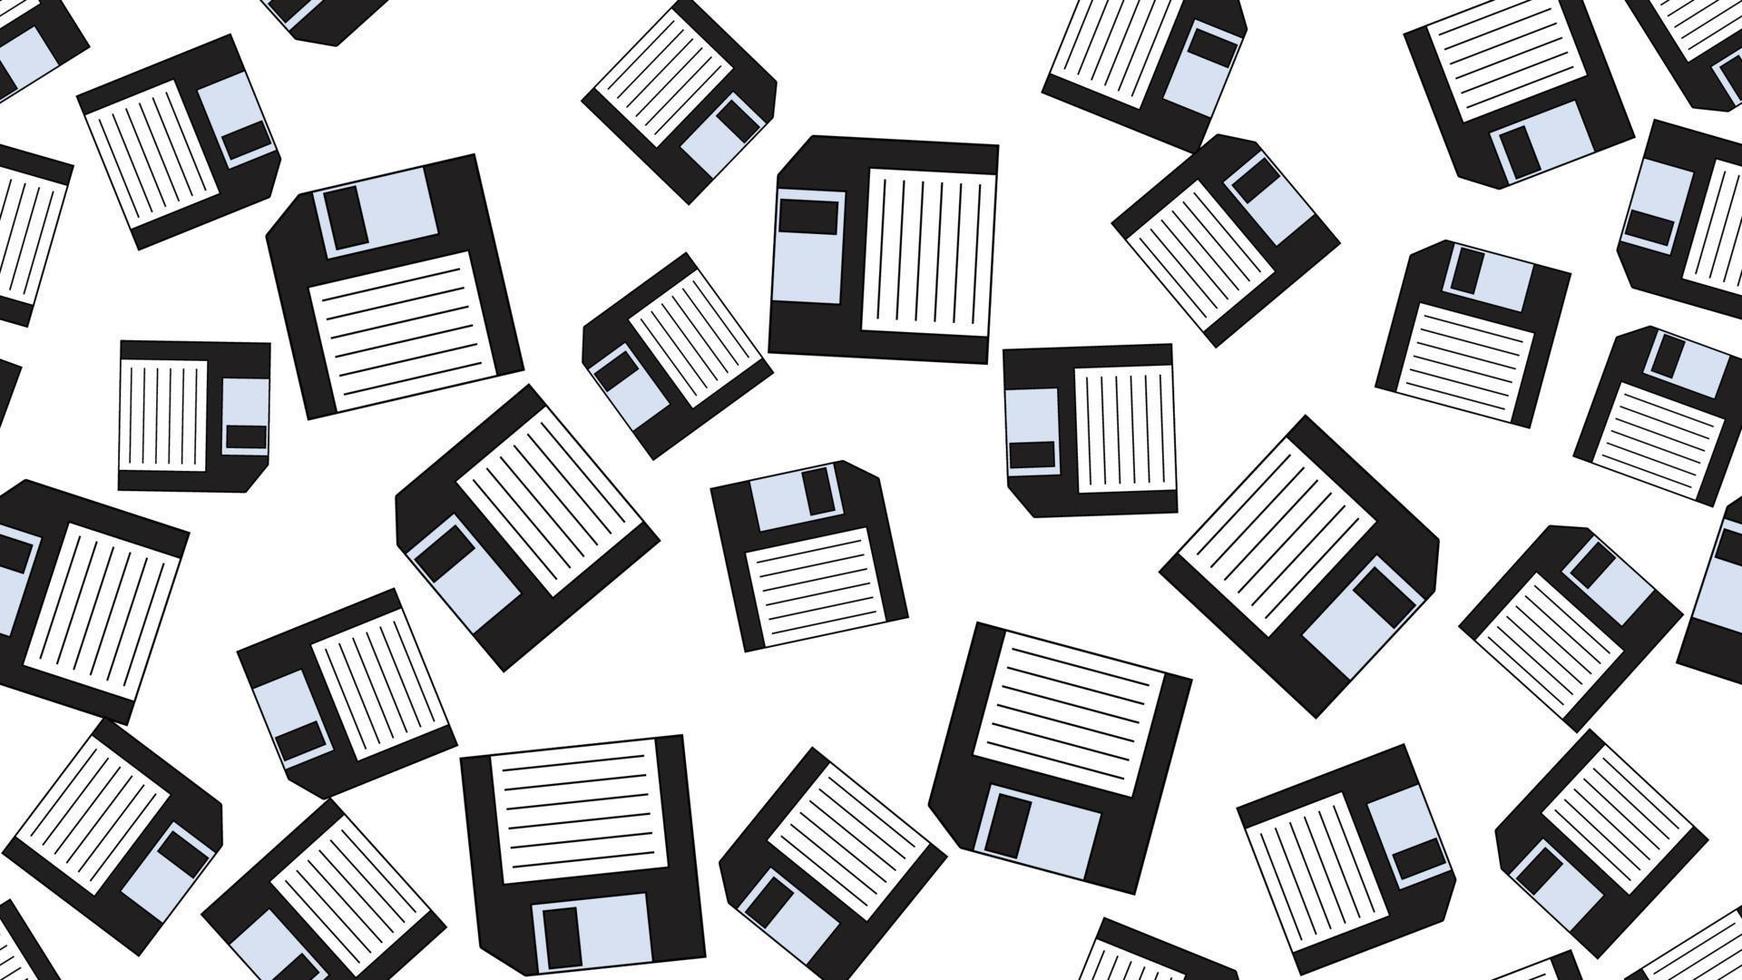 ordinateur sans fin à motif harmonieux avec de vieilles disquettes hipster blanches rétro vintage des années 70, 80, 90 isolées sur fond blanc. illustration vectorielle vecteur